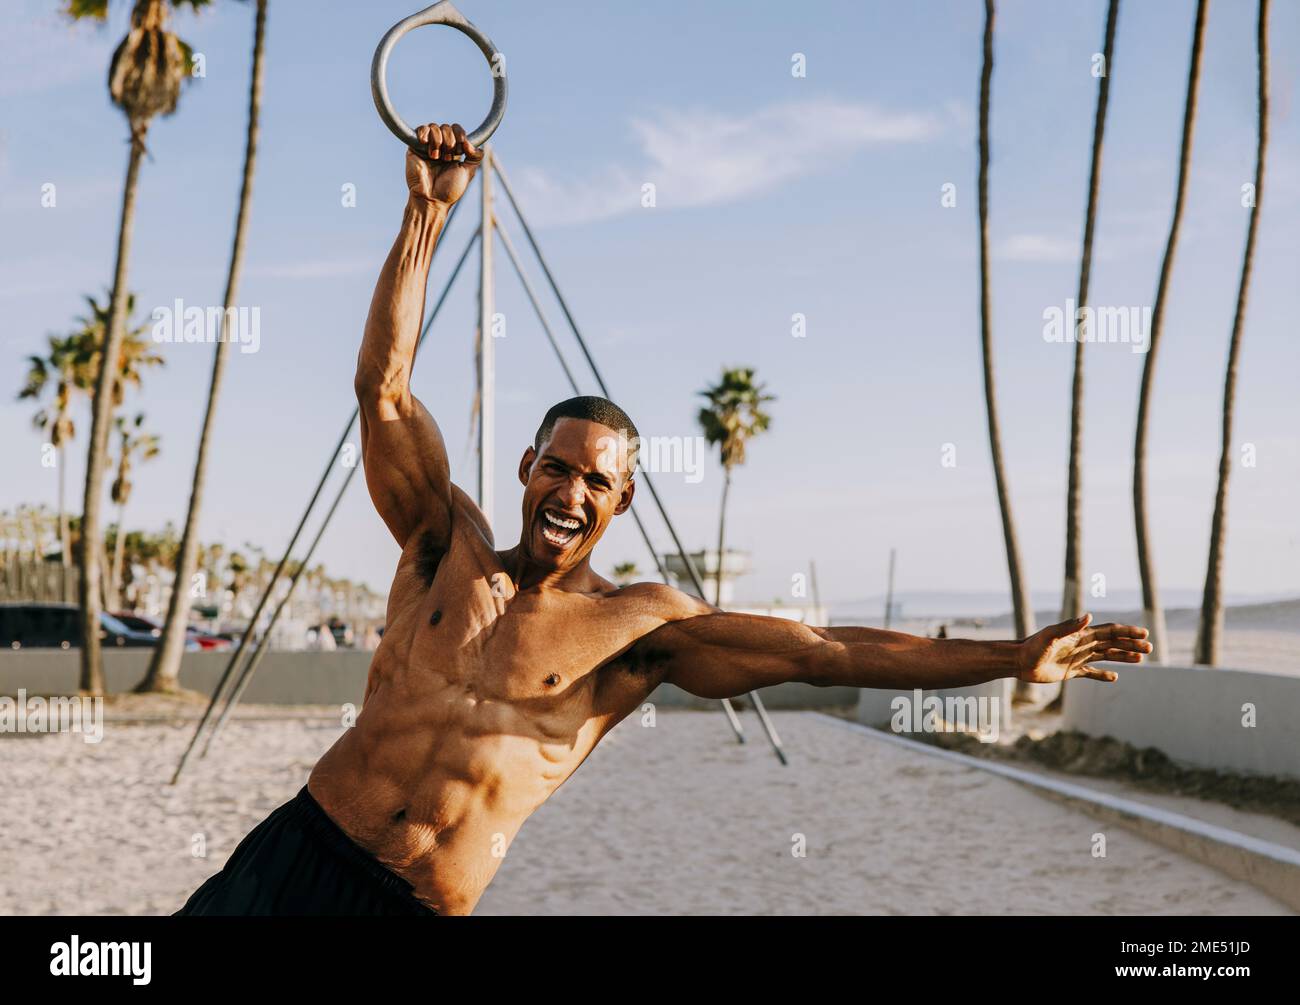 Fröhlicher Sportler, der sich am Strand an Turnringen festhält Stockfoto